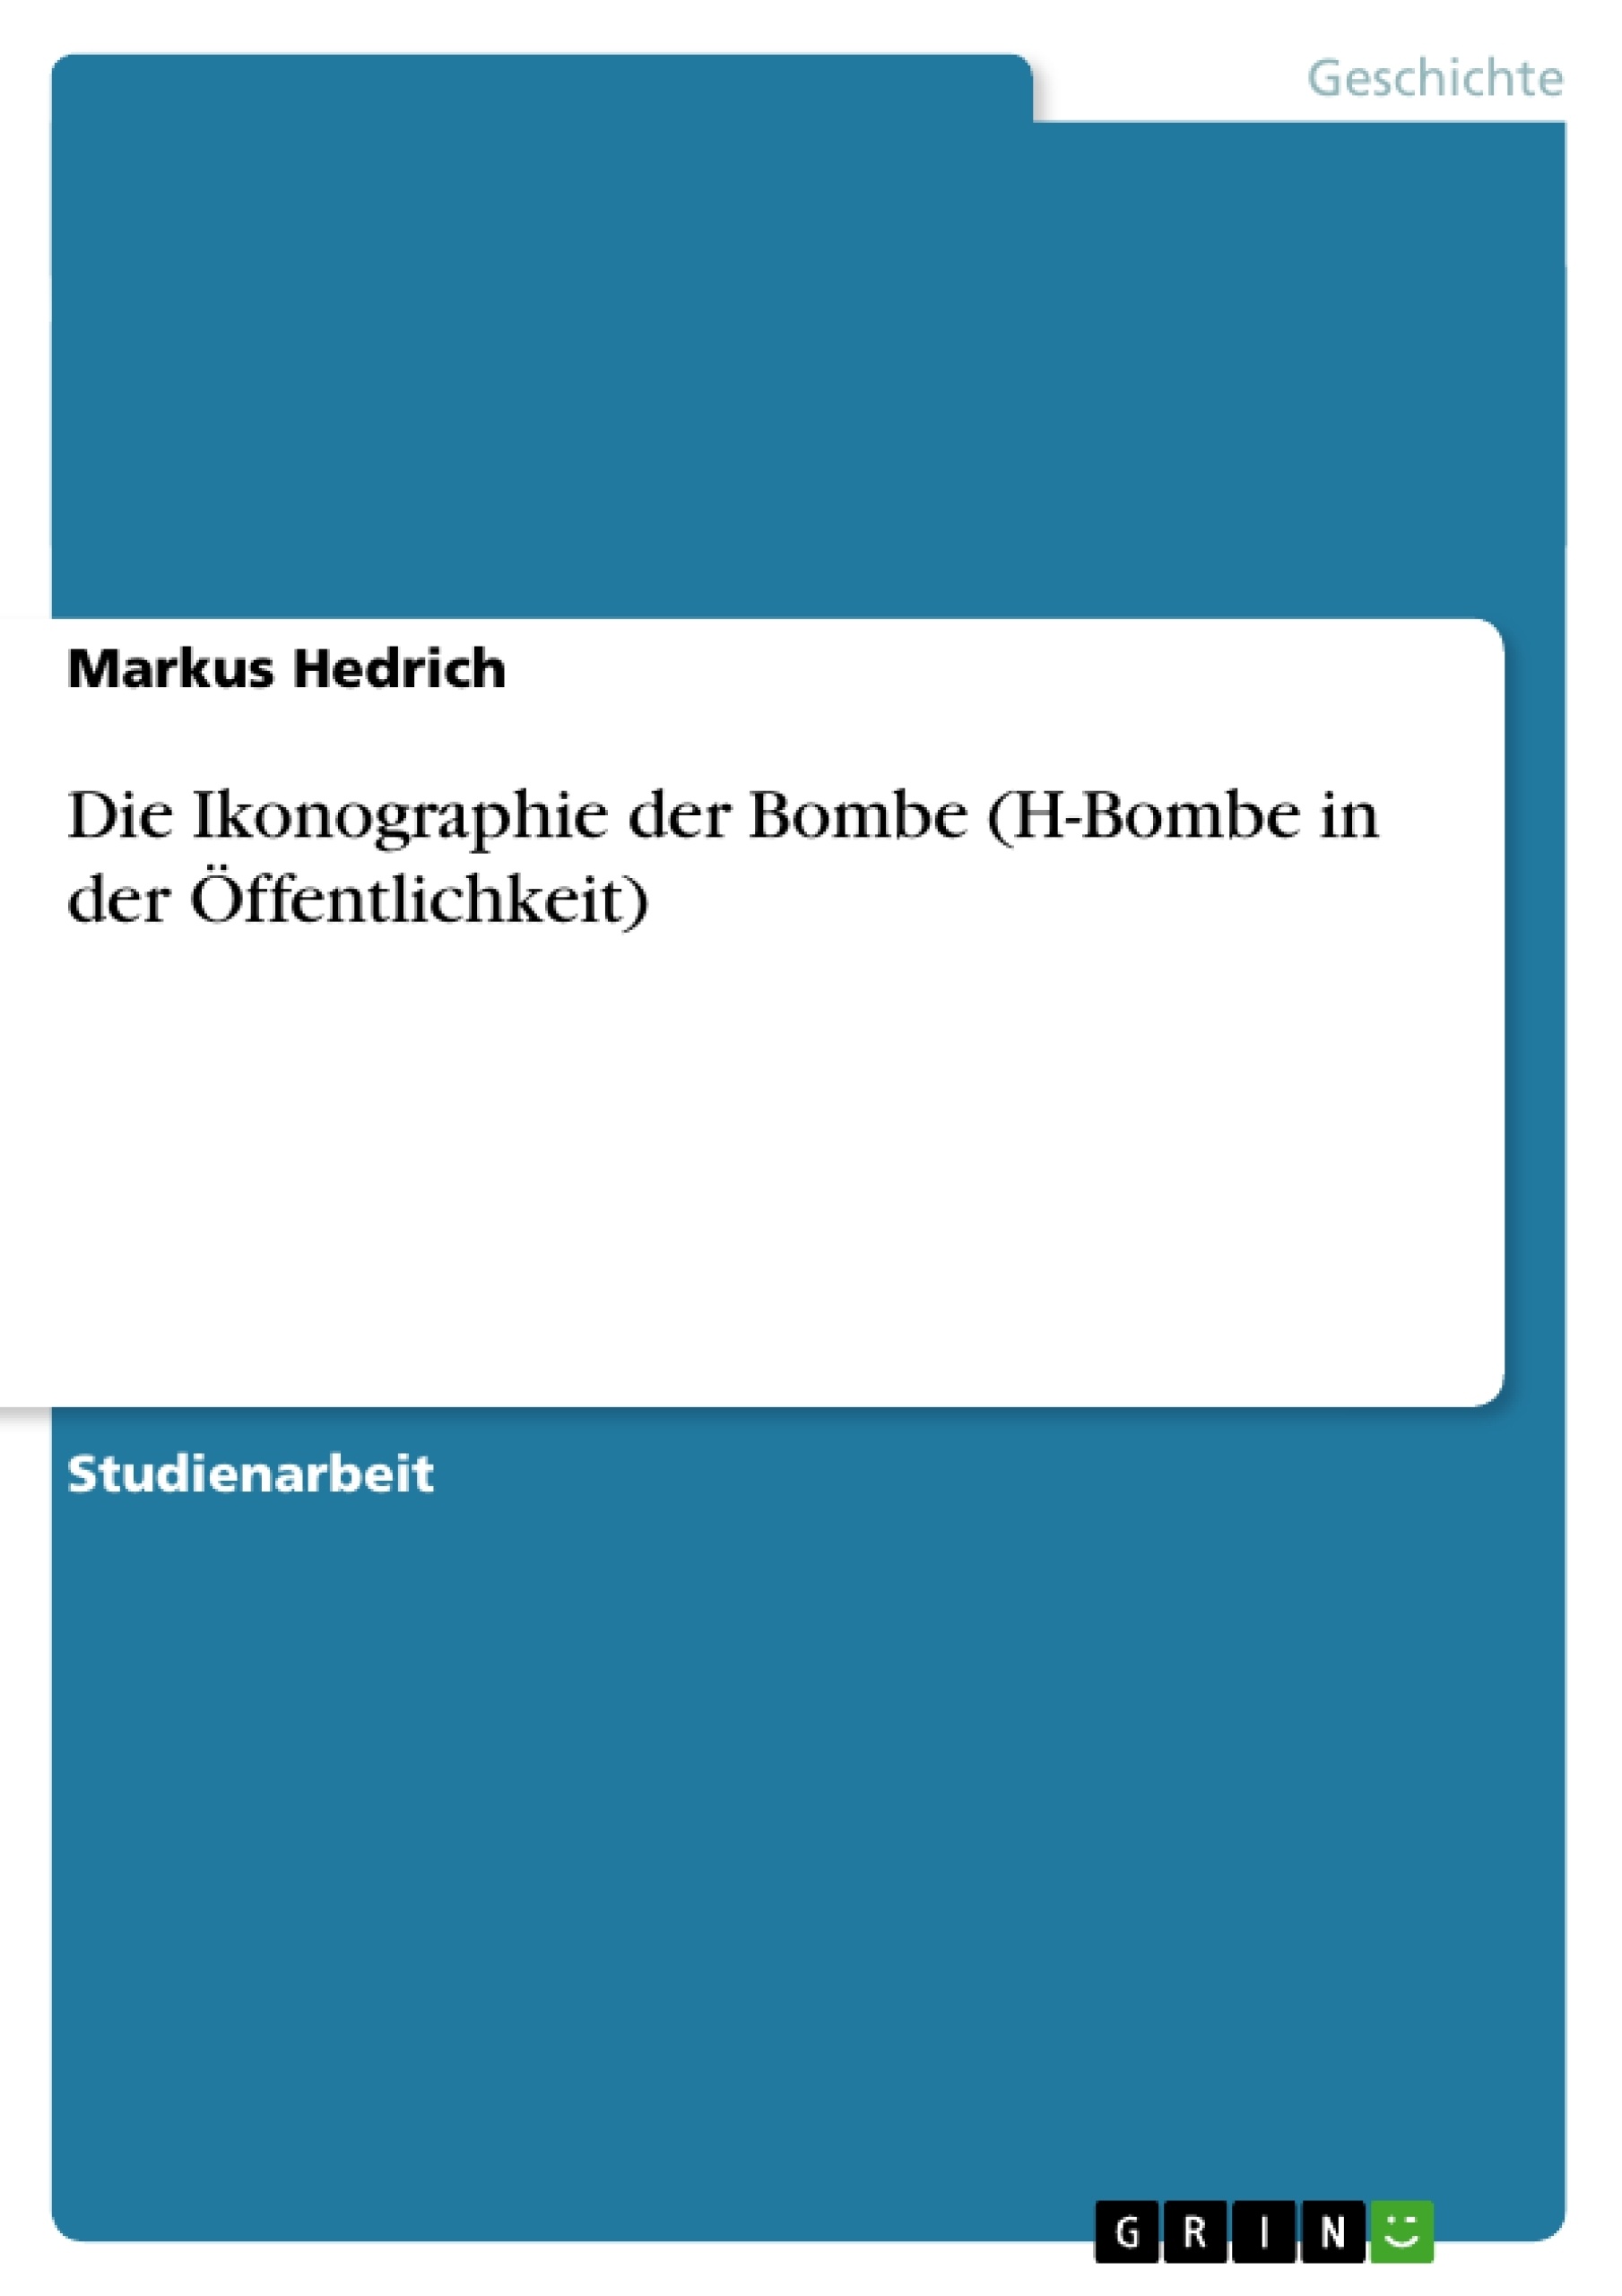 Title: Die Ikonographie der Bombe (H-Bombe in der Öffentlichkeit)